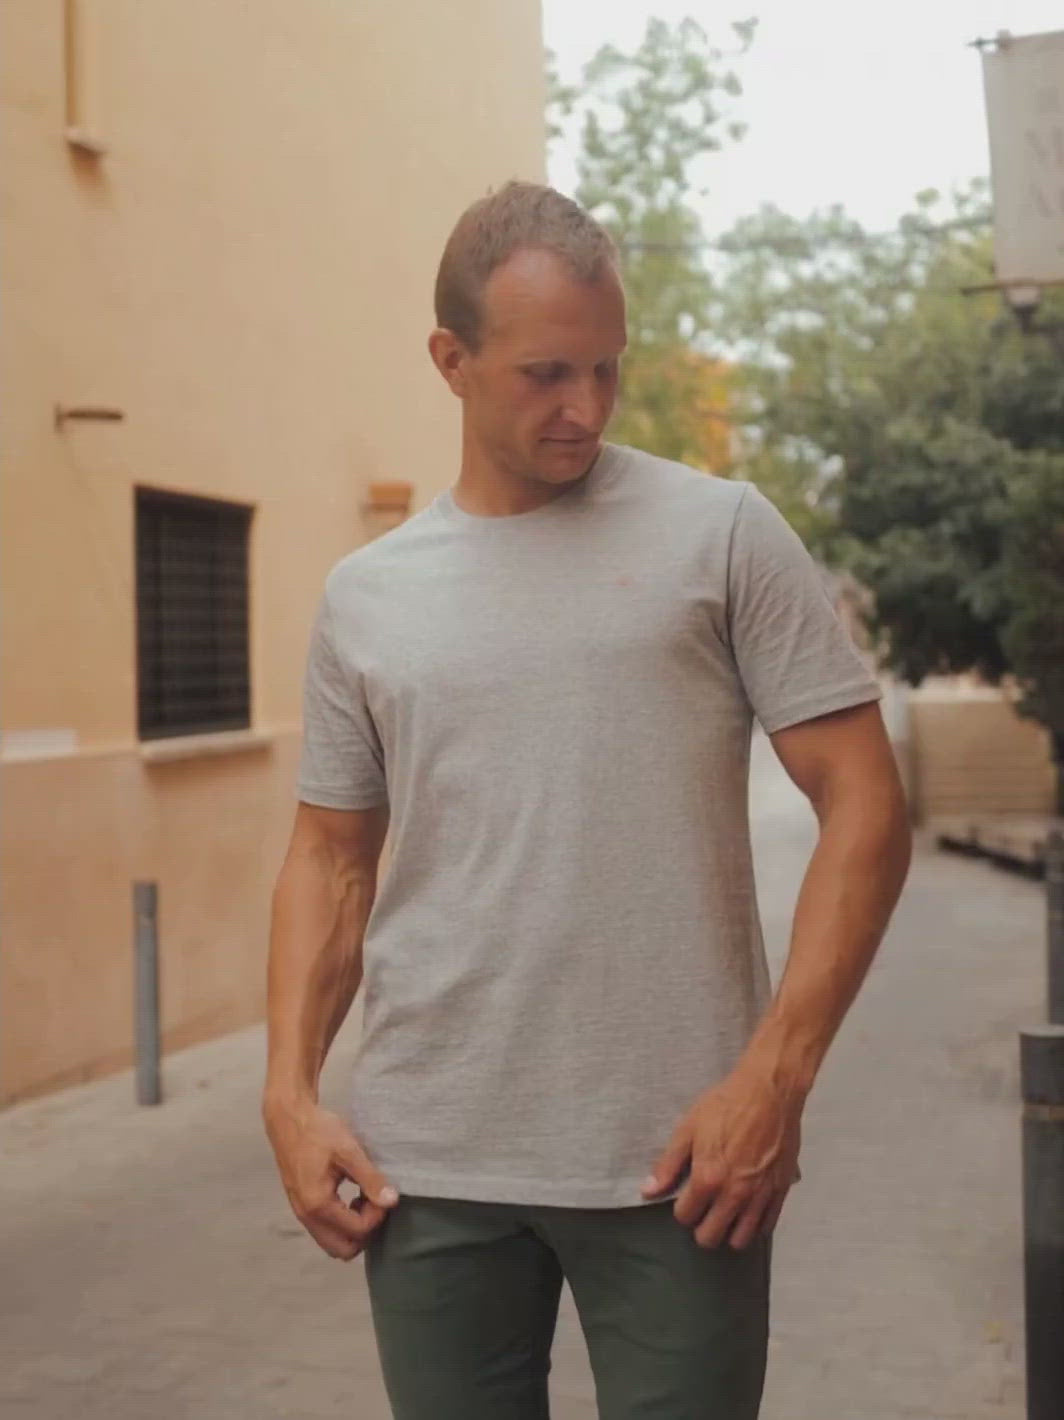 Royal pánské tričko z biobavlny vysoká gramáž šedé muž se upravuje u domu